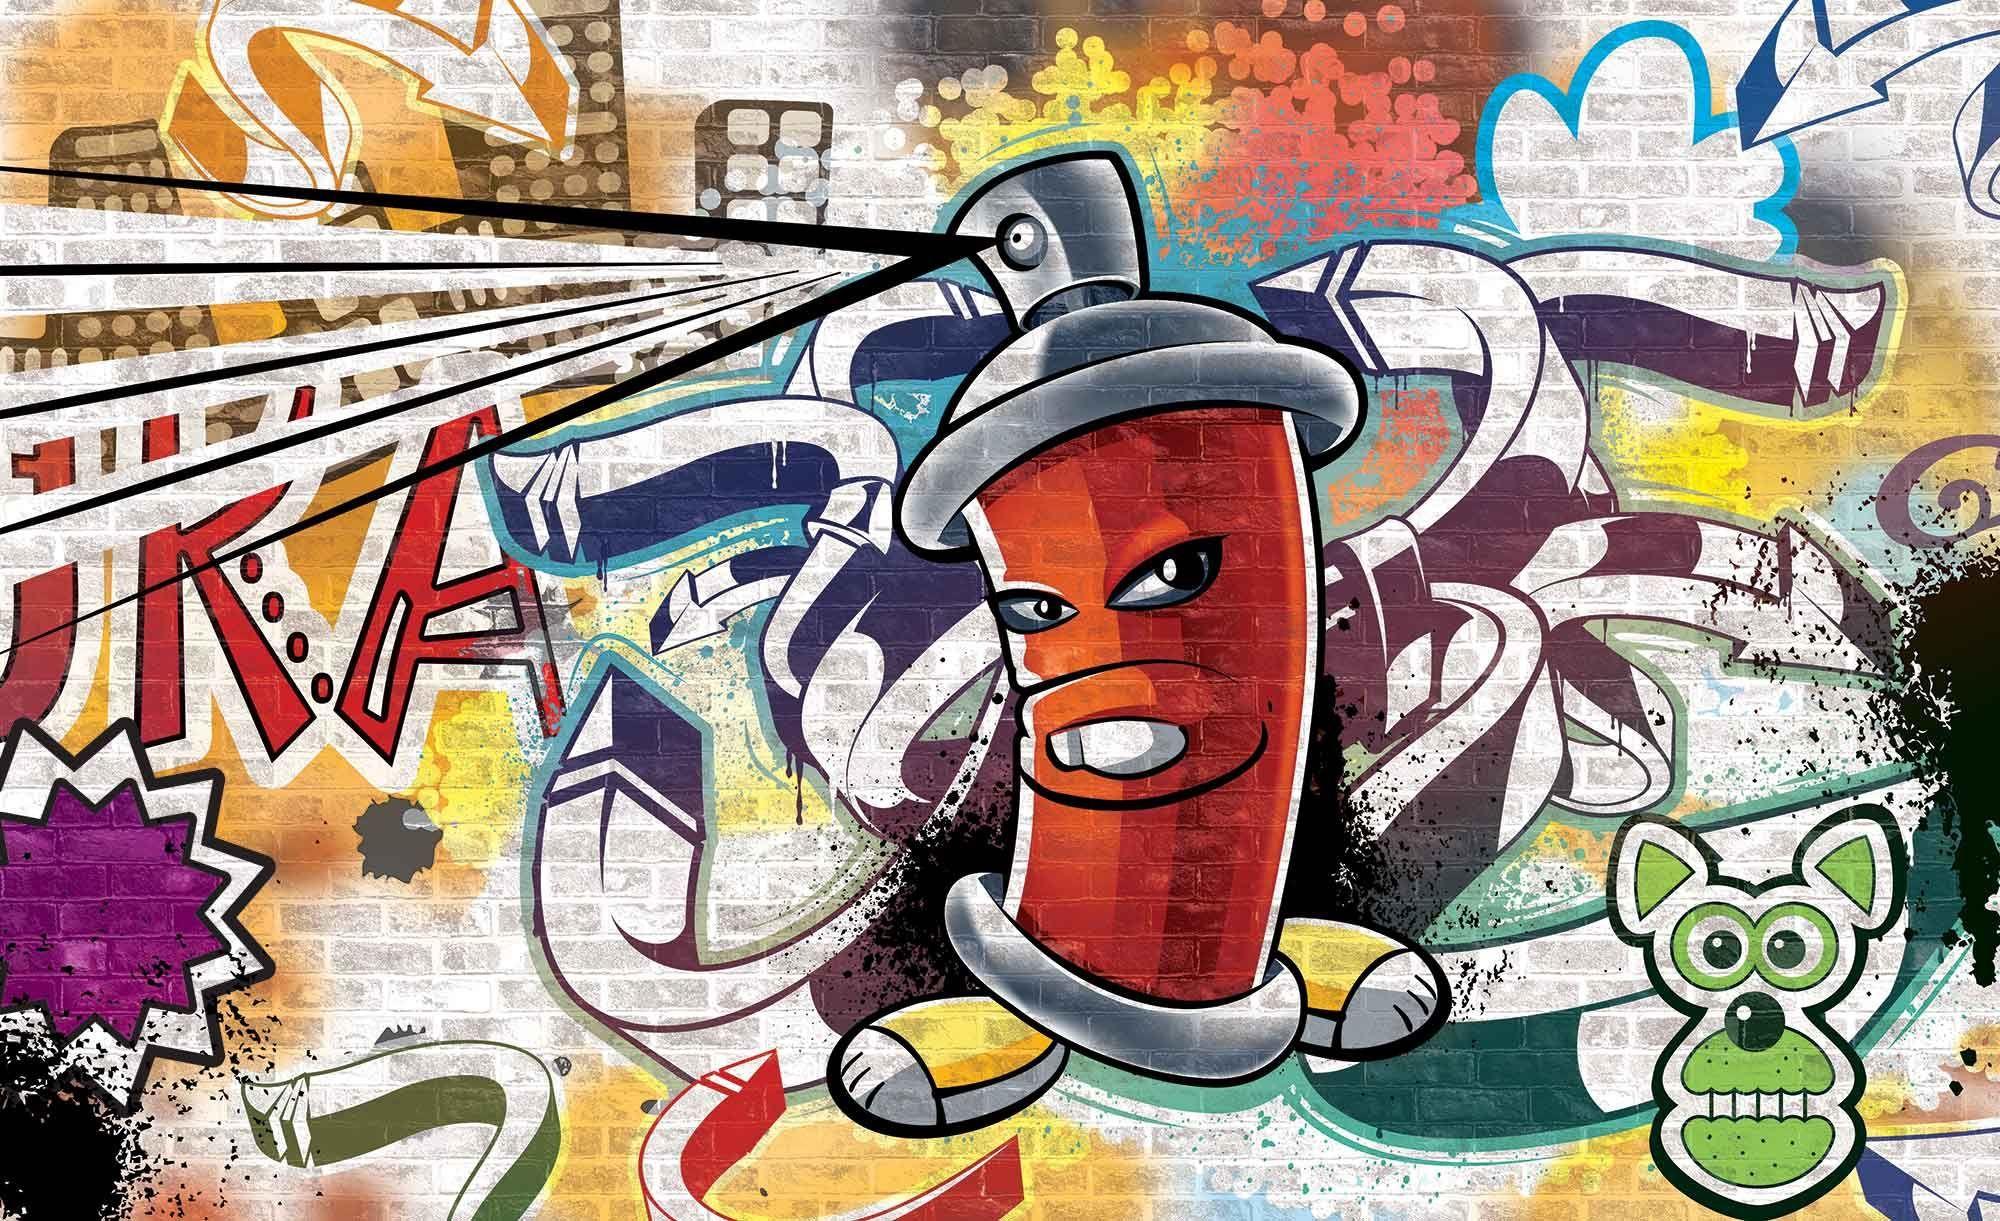 2000 x 1221 · jpeg - Cartoon Graffiti Wallpapers - Top Free Cartoon Graffiti Backgrounds ...